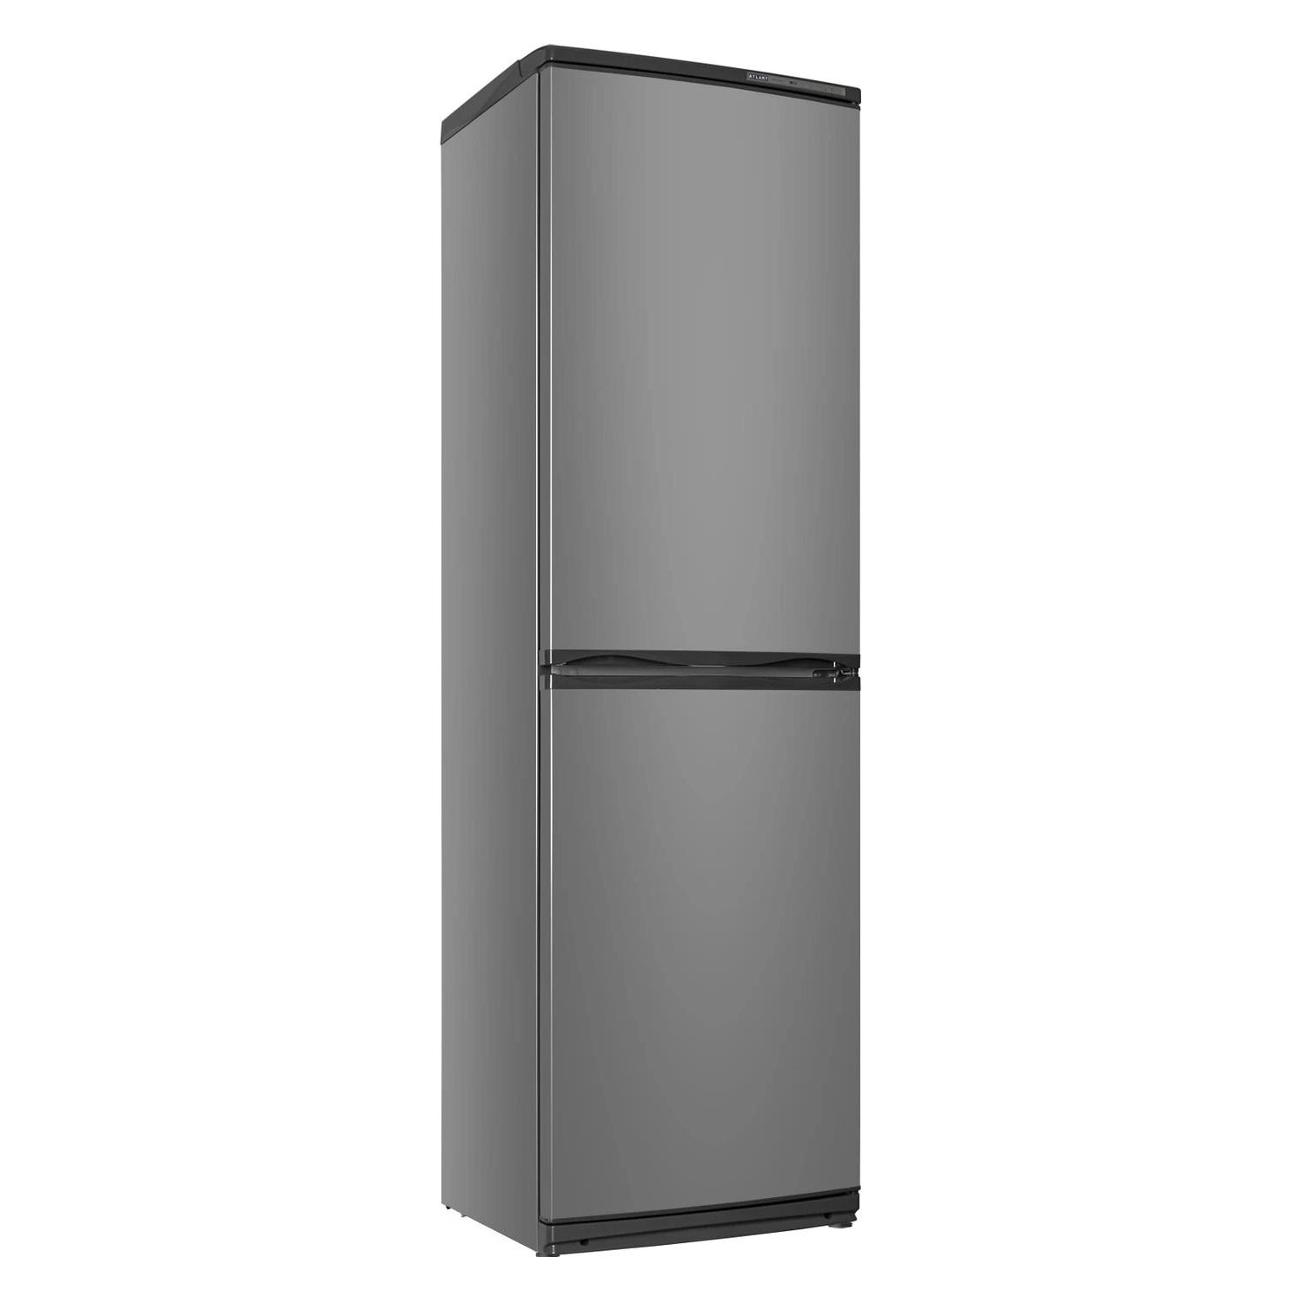 Спб купить холодильник недорого двухкамерный. Холодильник ATLANT хм 6025-060. Холодильник ATLANT хм 6025. Холодильник ATLANT 6025-080. Холодильник ATLANT хм 6025-031.